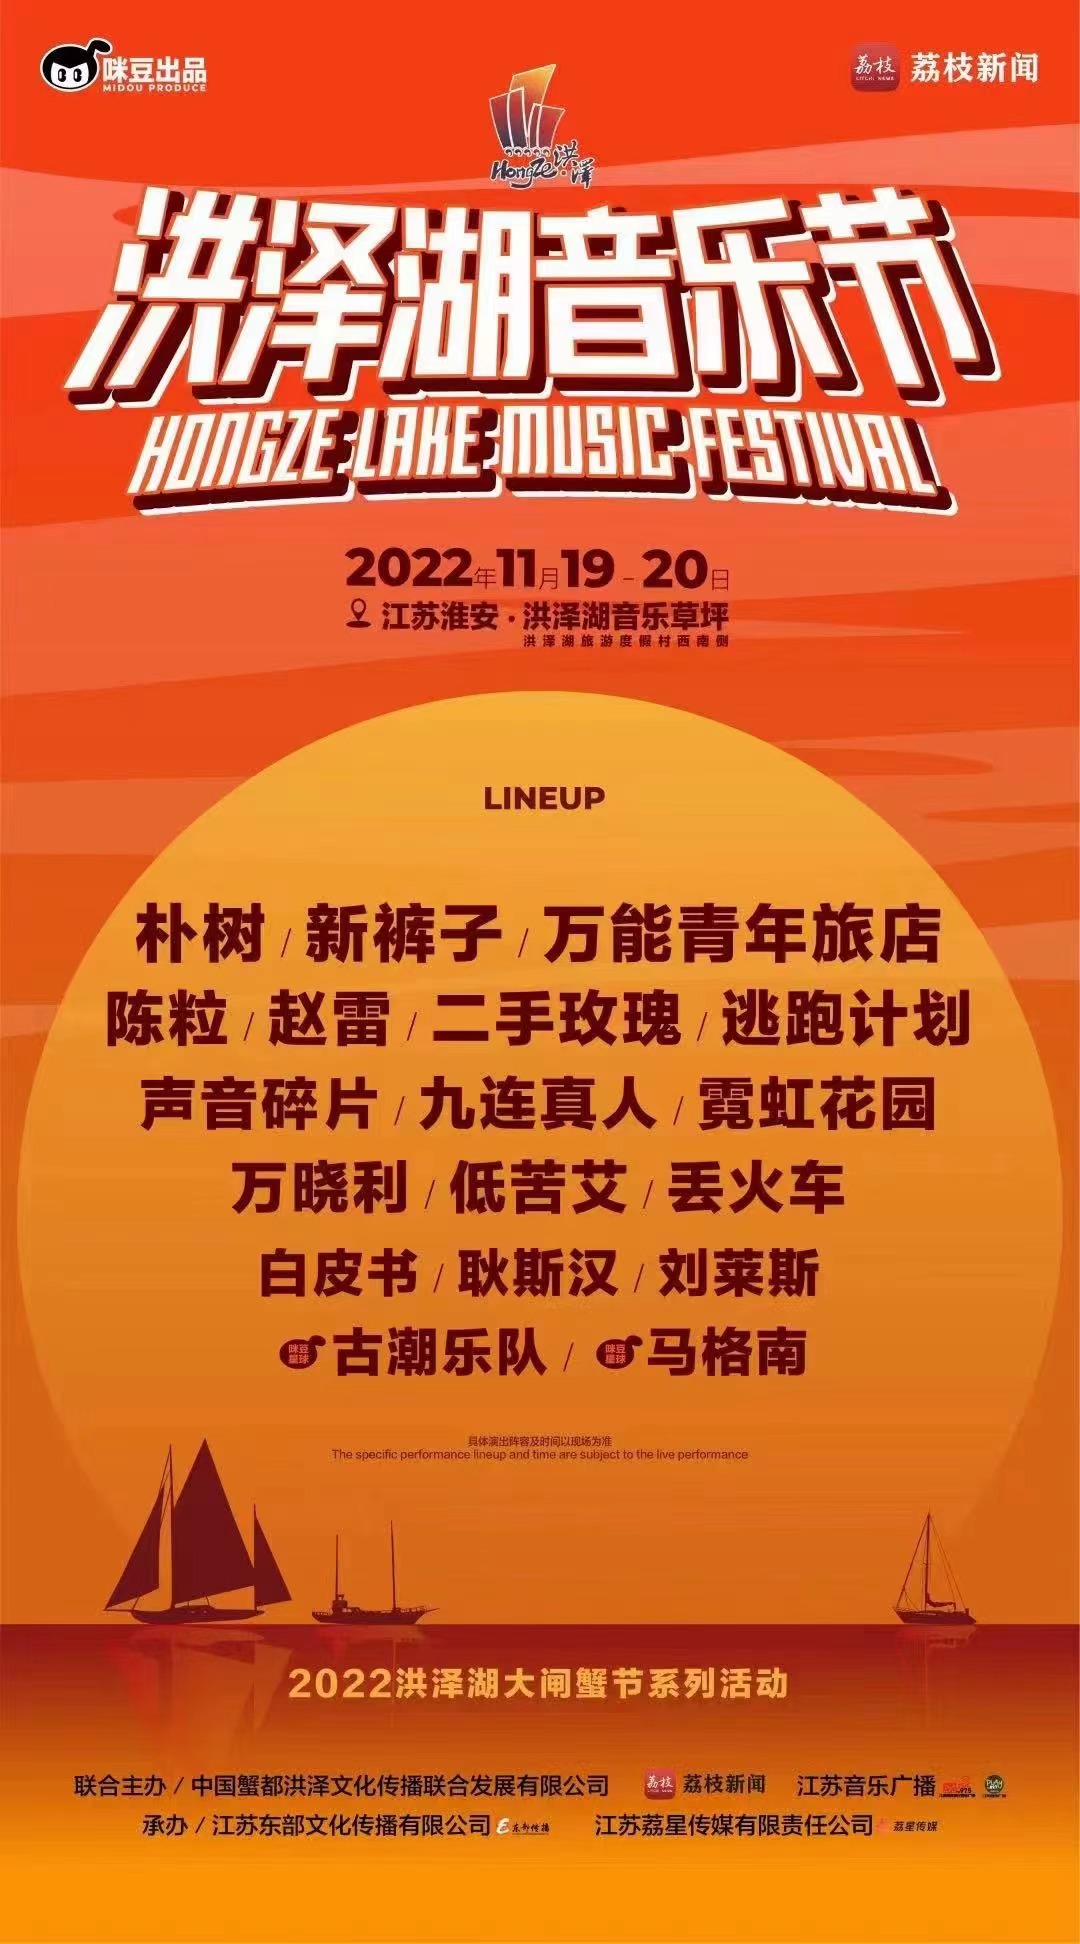 2022江苏洪泽湖音乐节时间、地点、门票价格